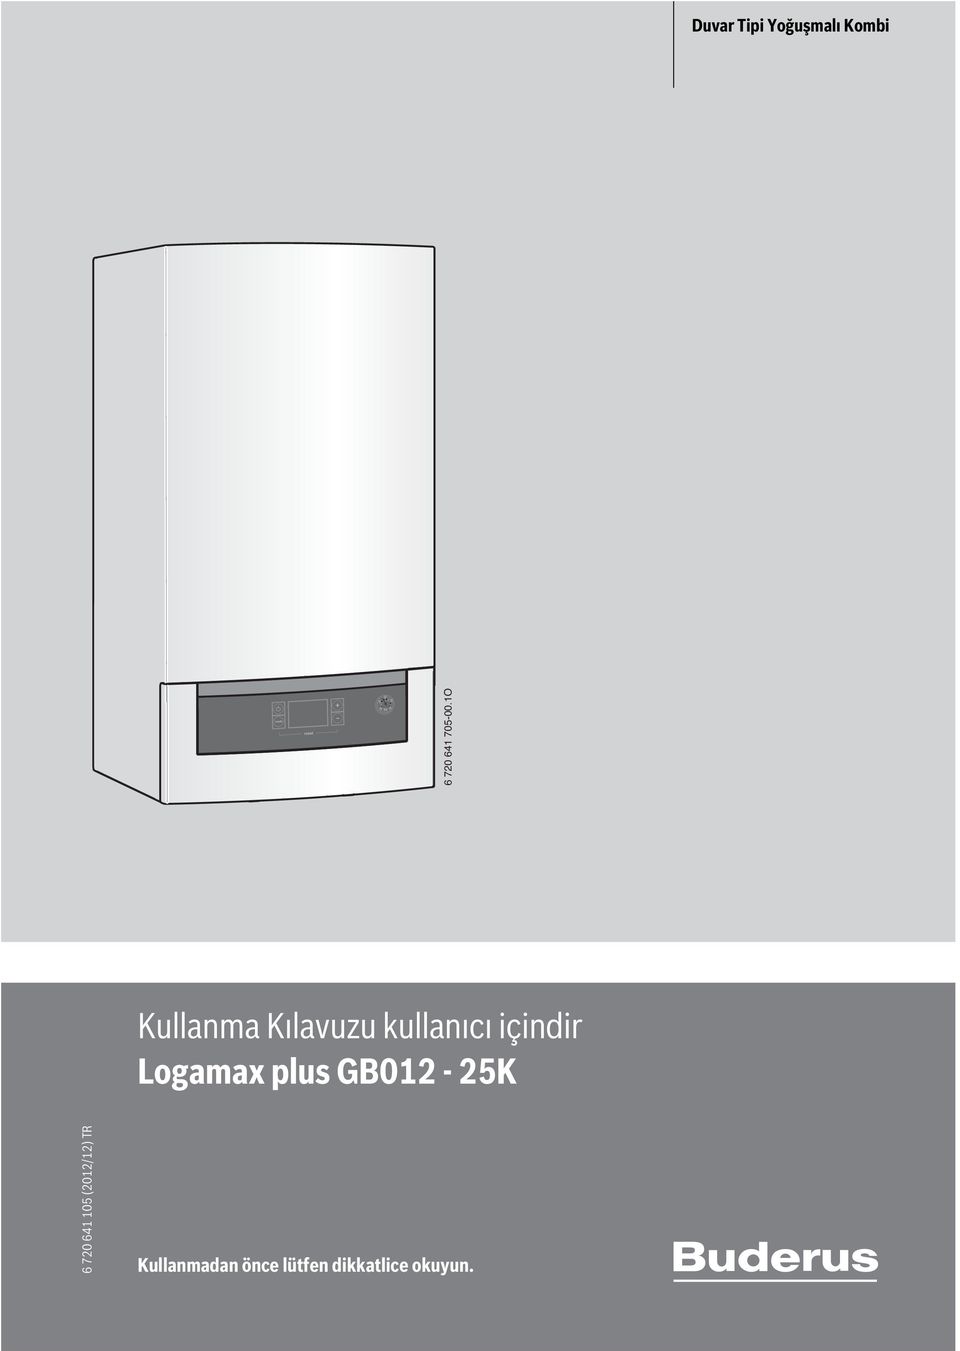 Logamax plus GB012-25K 6 720 641 105